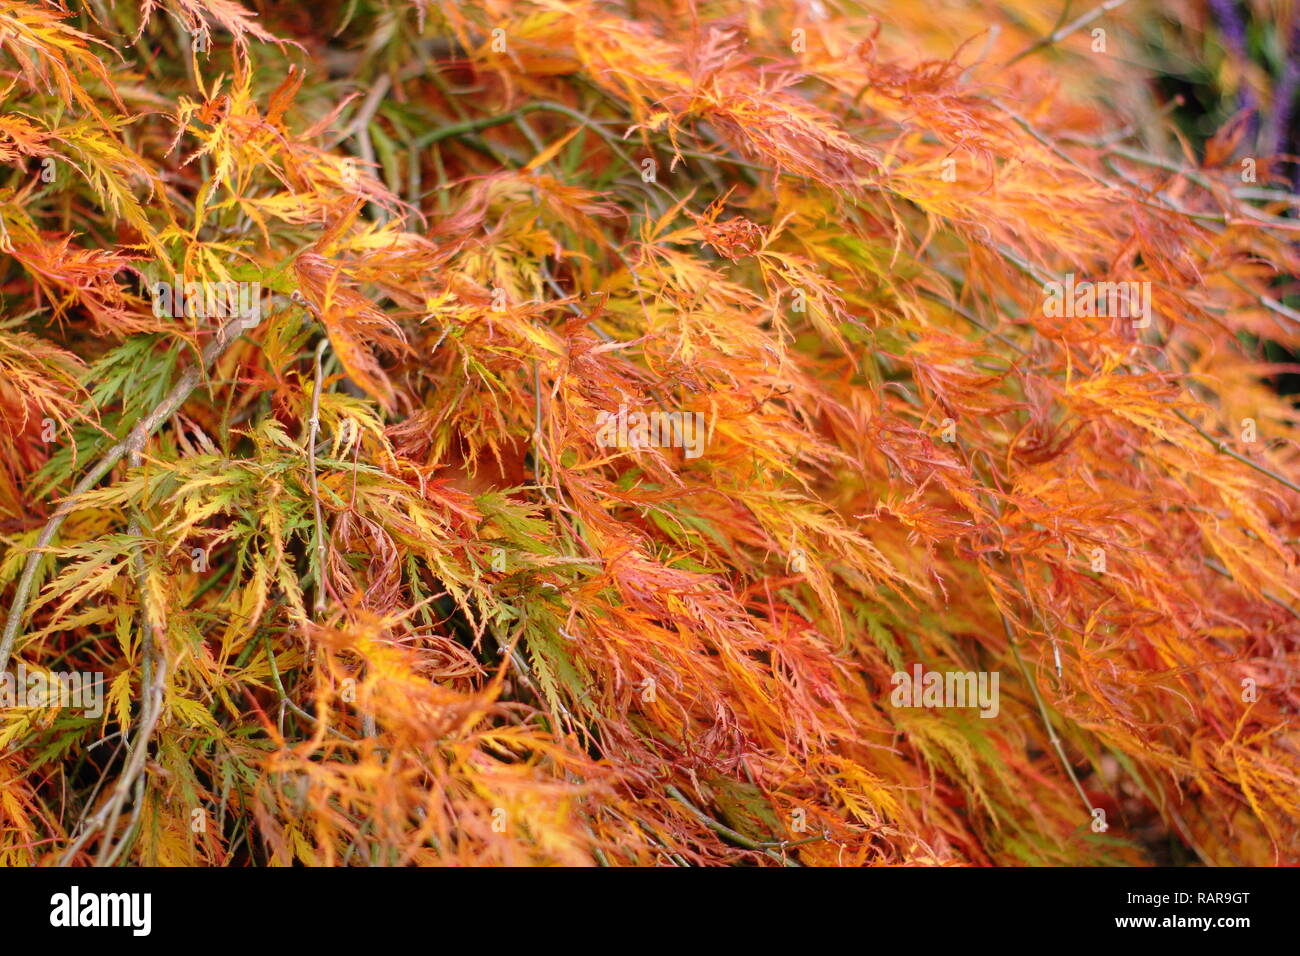 Acer Palmatum Dissectum Atropurpureum. Acero giapponese 'Dissectum Atropurpureum' visualizzazione di vivaci colori autunnali, REGNO UNITO Foto Stock